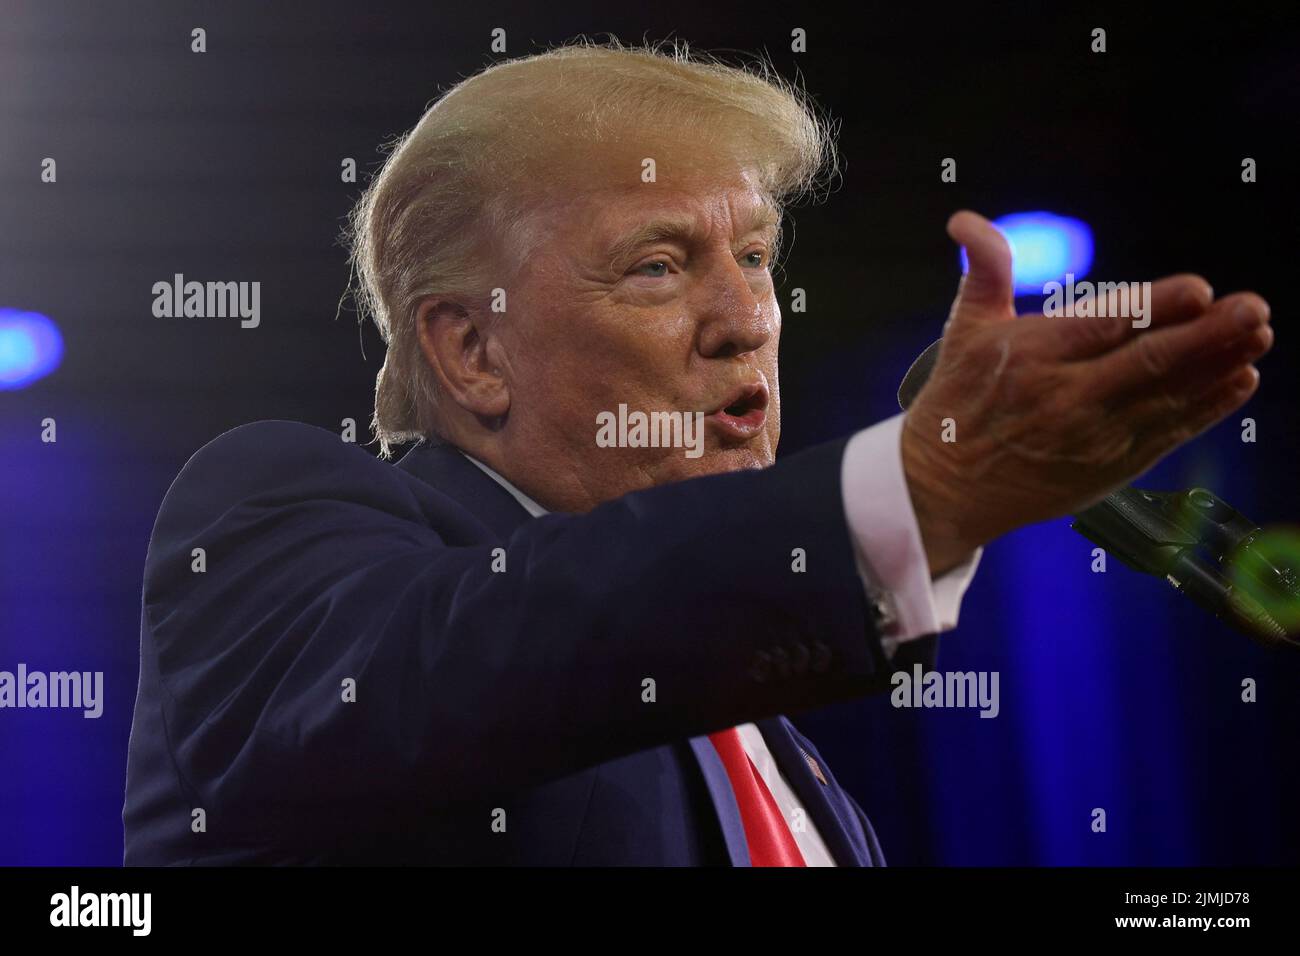 El ex presidente estadounidense Donald Trump habla en la Conferencia de Acción Política Conservadora (CPAC) en Dallas, Texas, EE.UU., el 6 de agosto de 2022. REUTERS/Brian Snyder Foto de stock